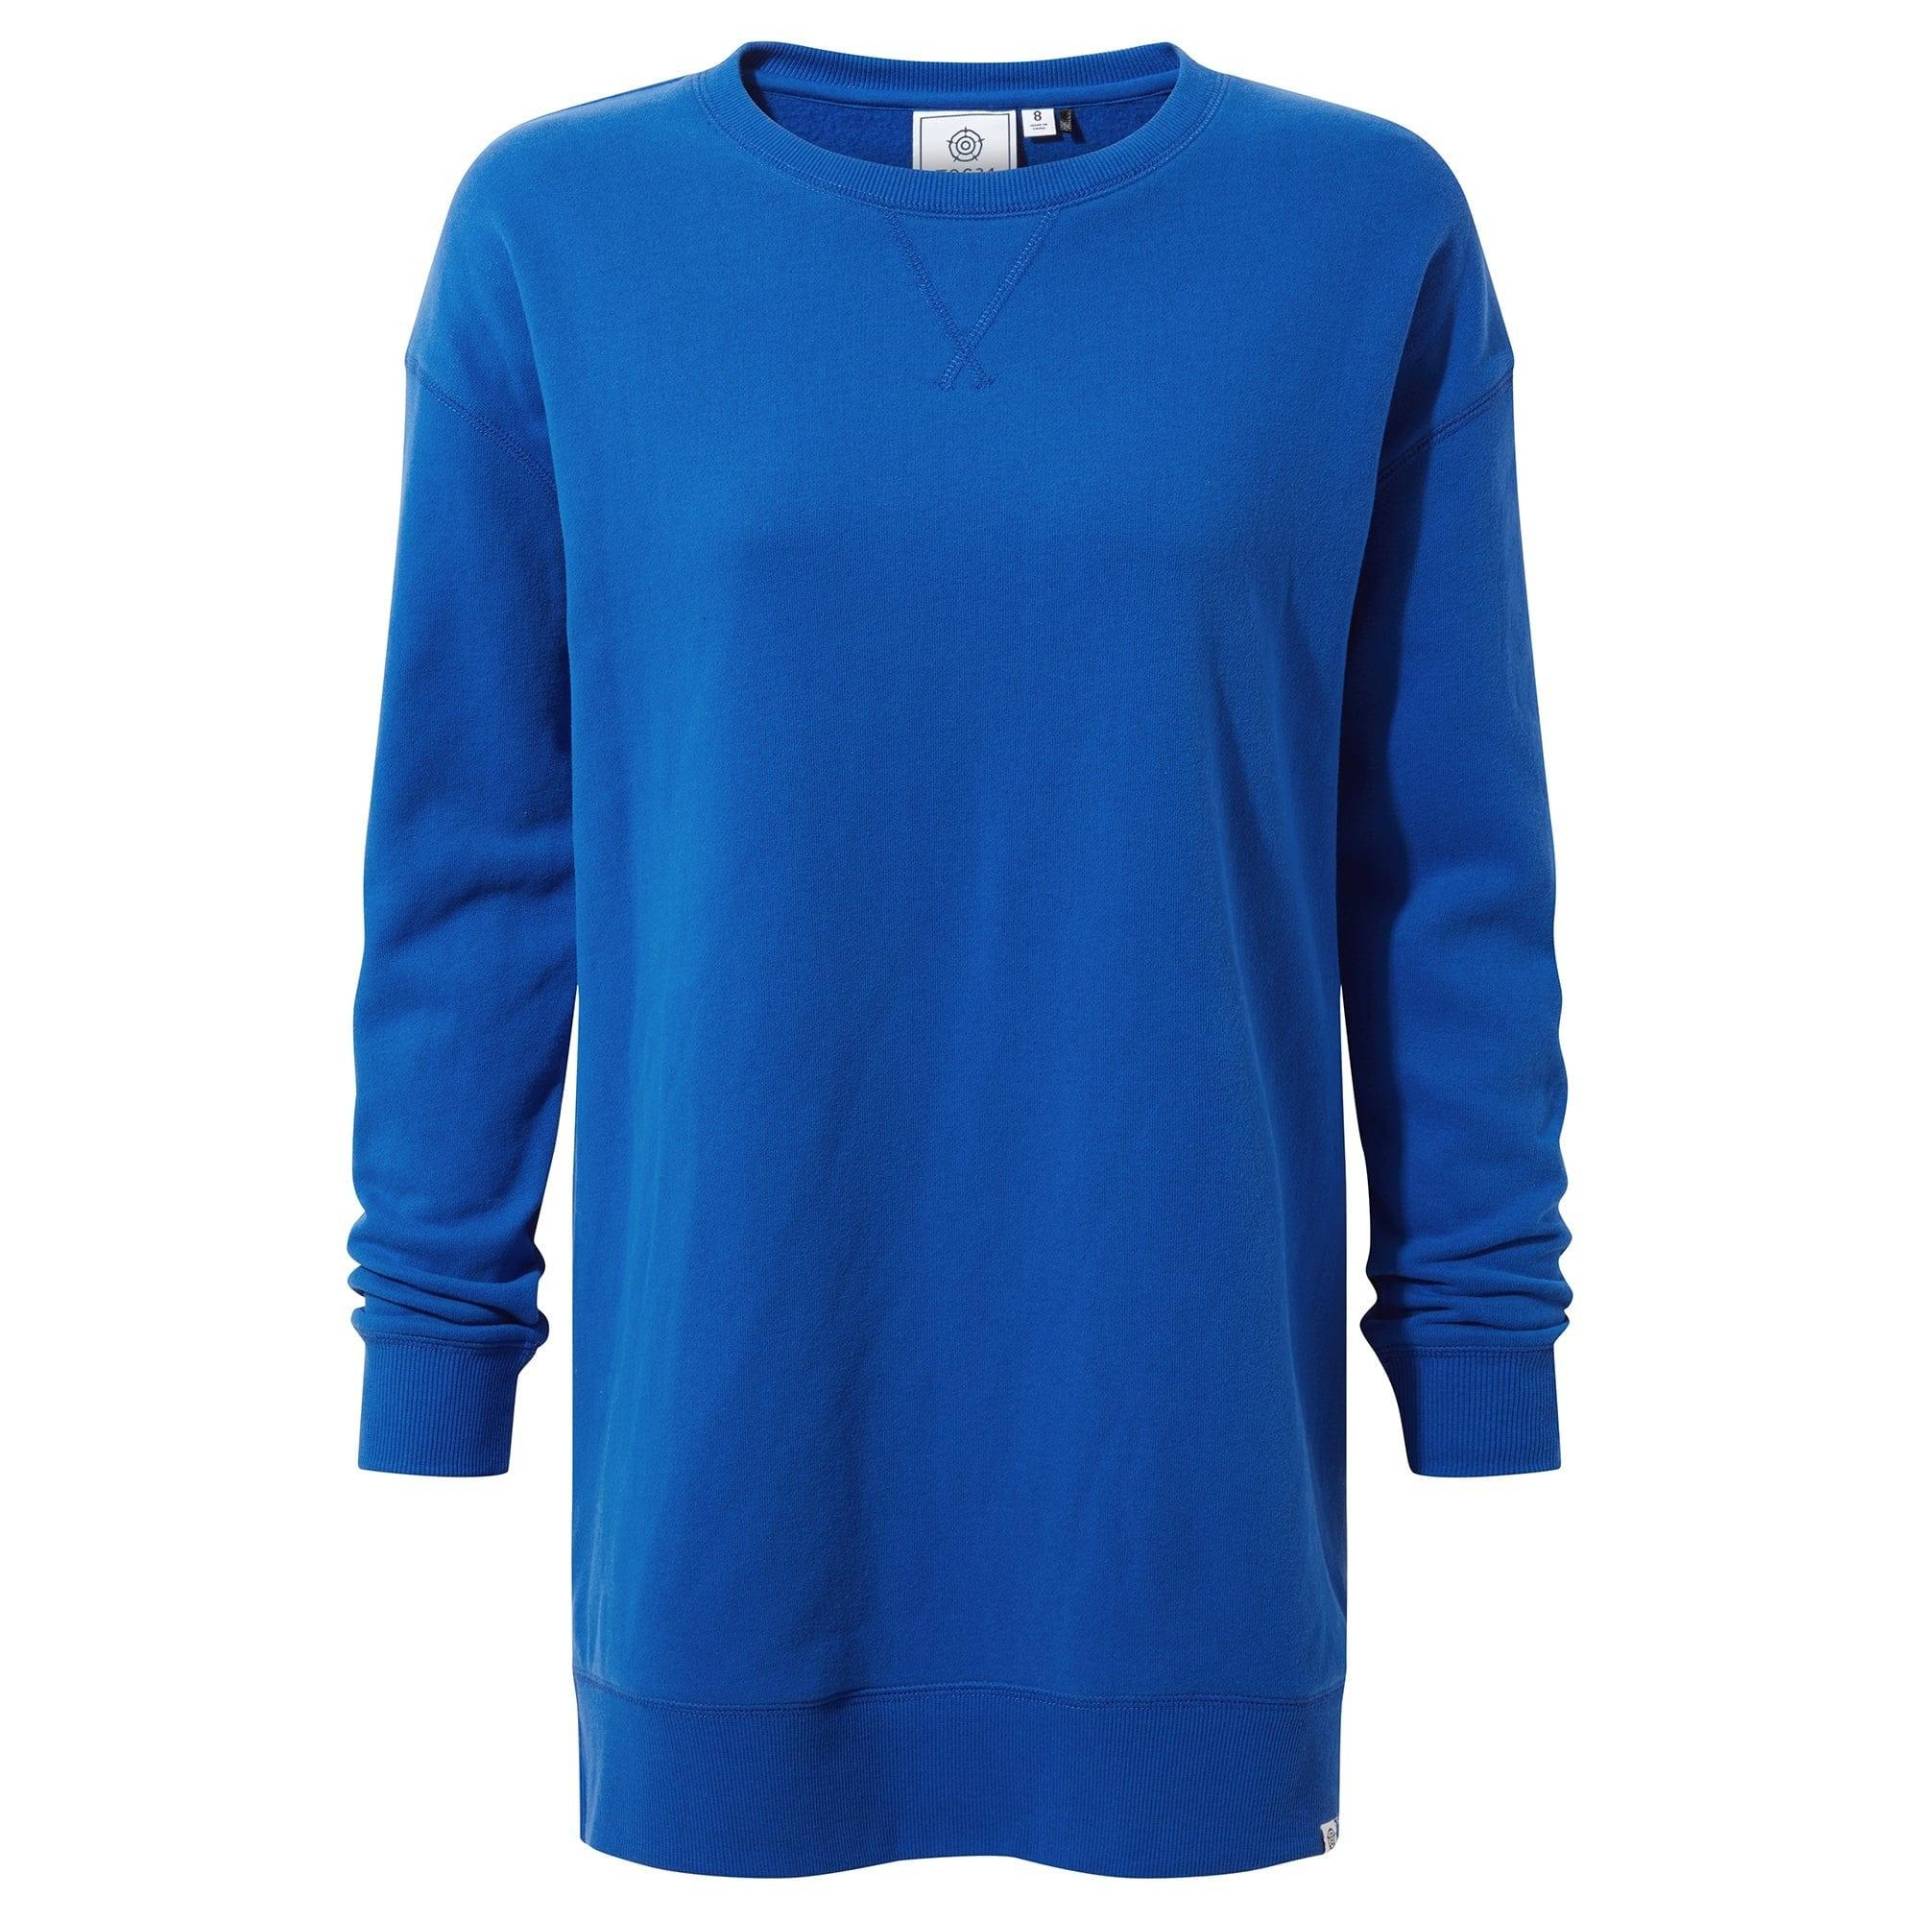 Michelle Sweatshirt Damen Bleached Blau 34 von Tog24